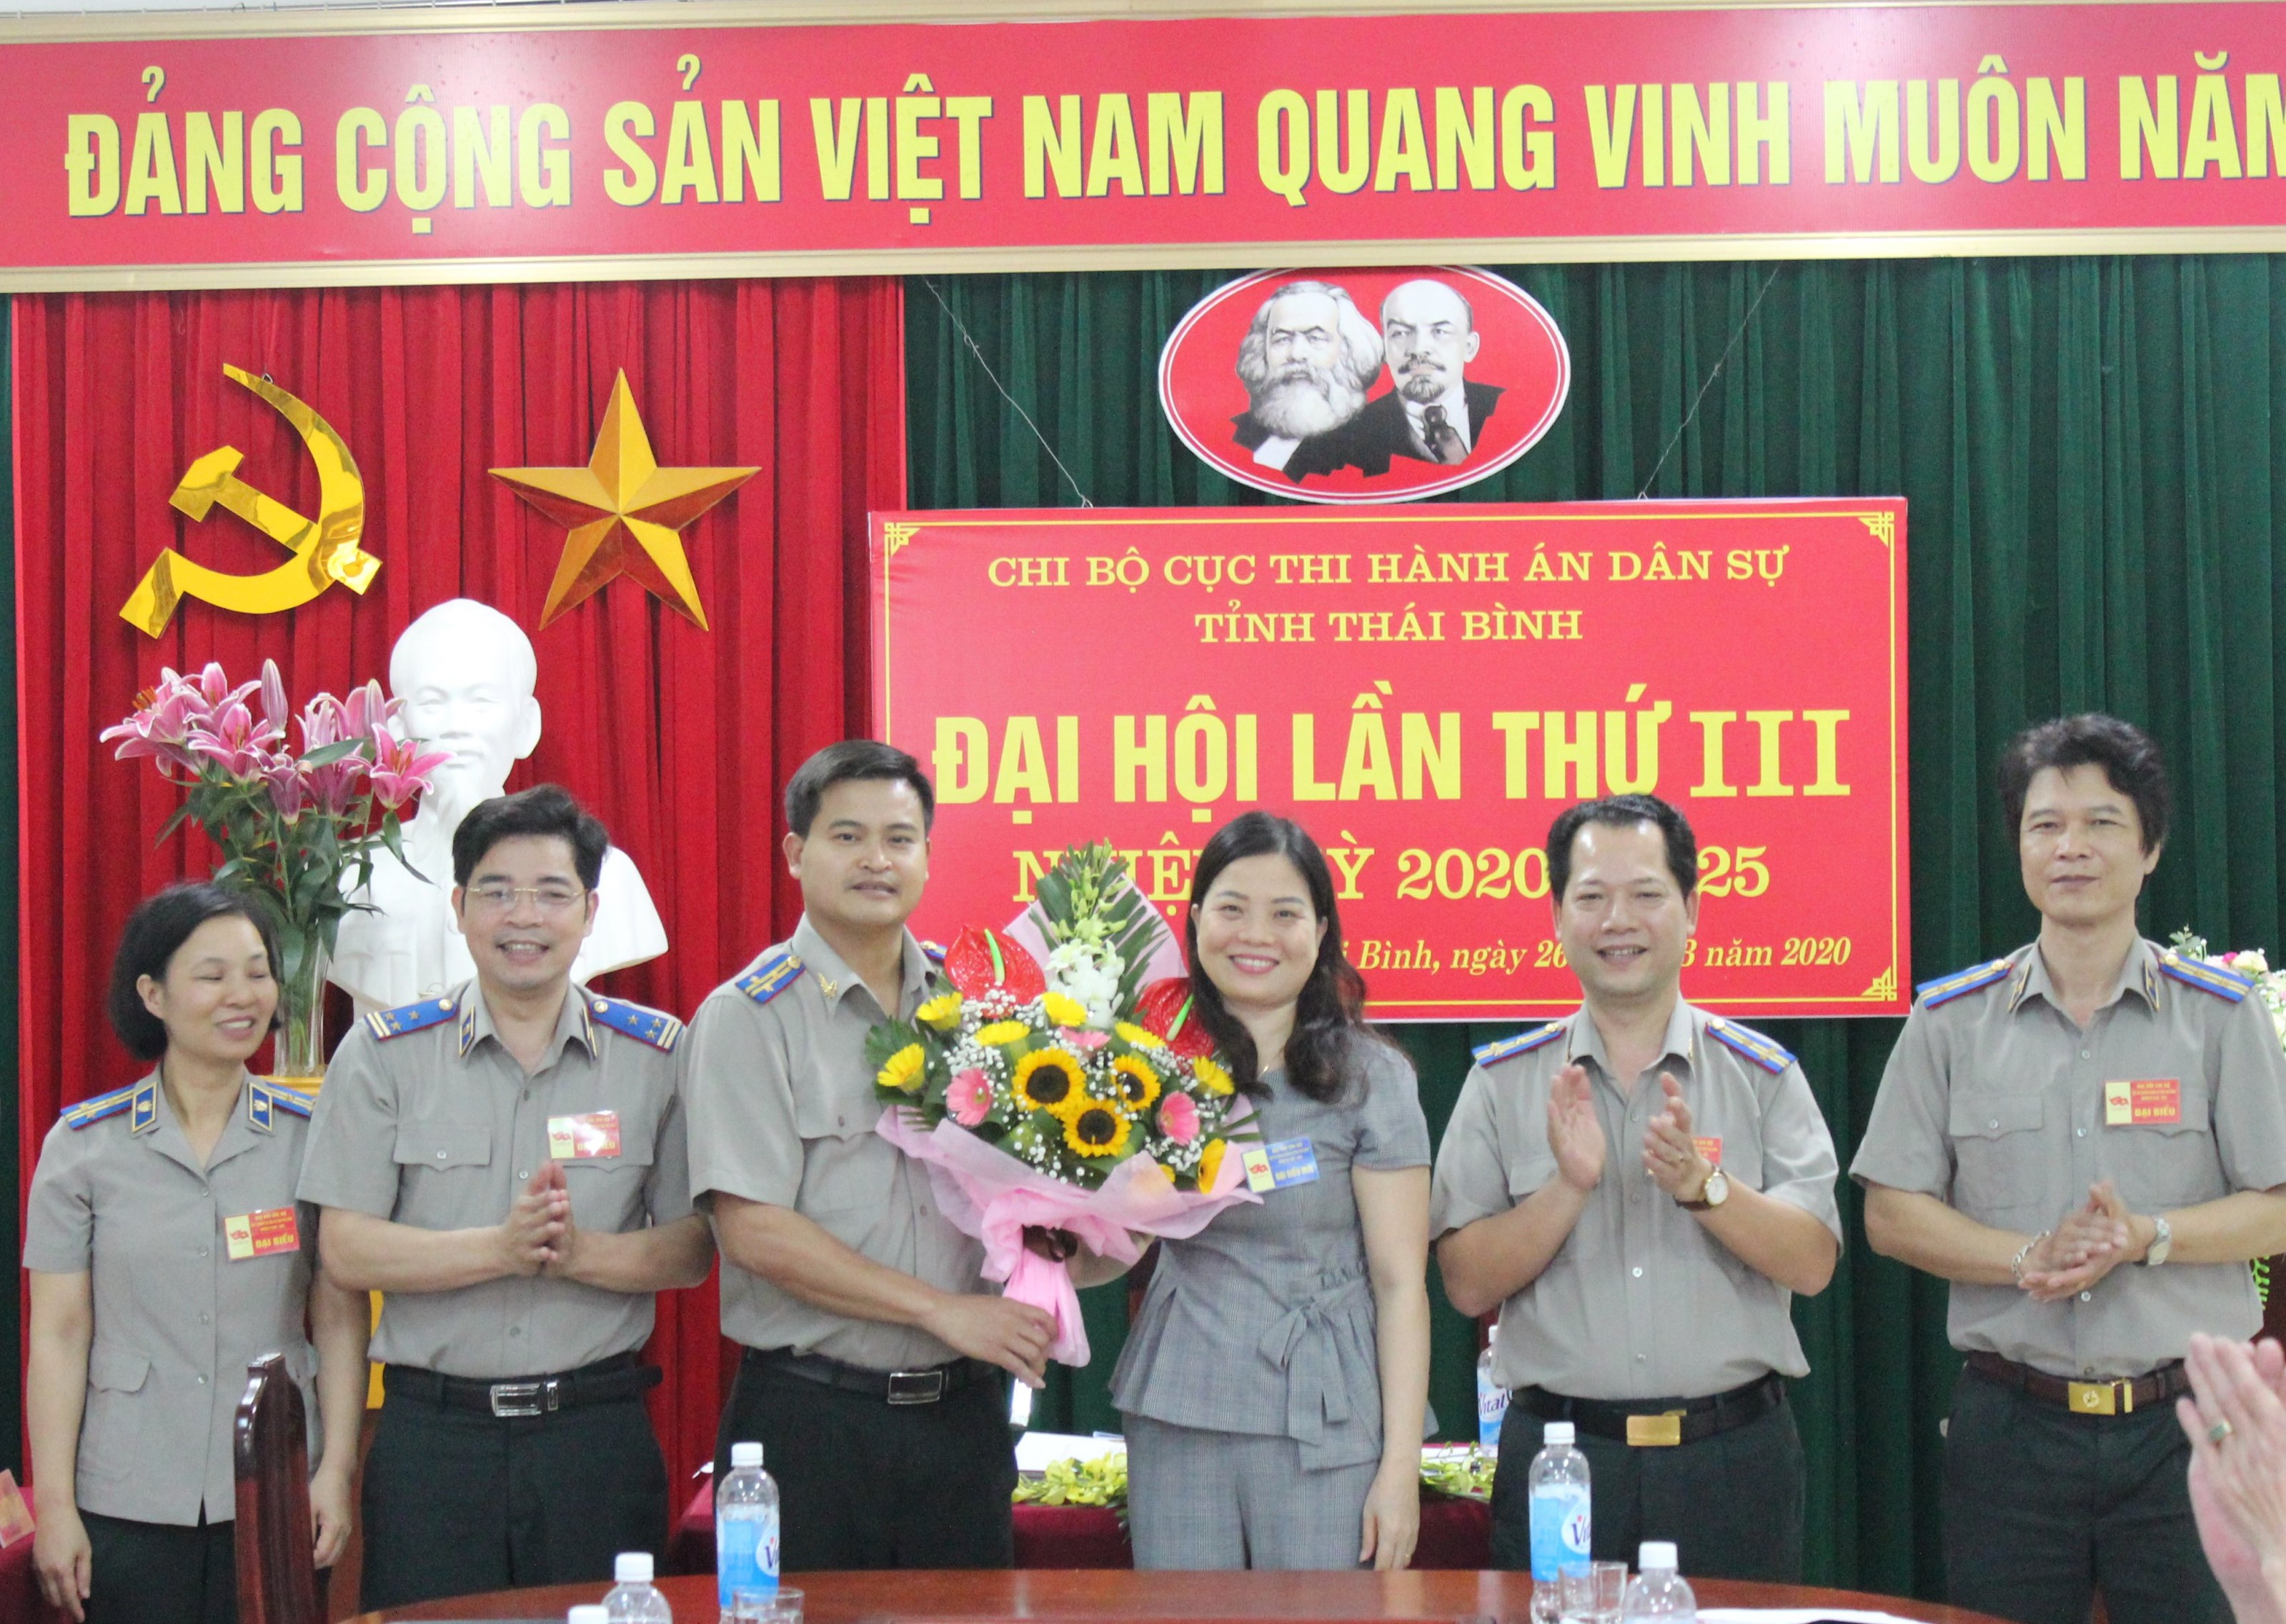 Chi bộ Cục Thi hành án dân sự tỉnh Thái Bình tổ chức thành công Đại hội lần thứ III nhiệm kỳ 2020 – 2025